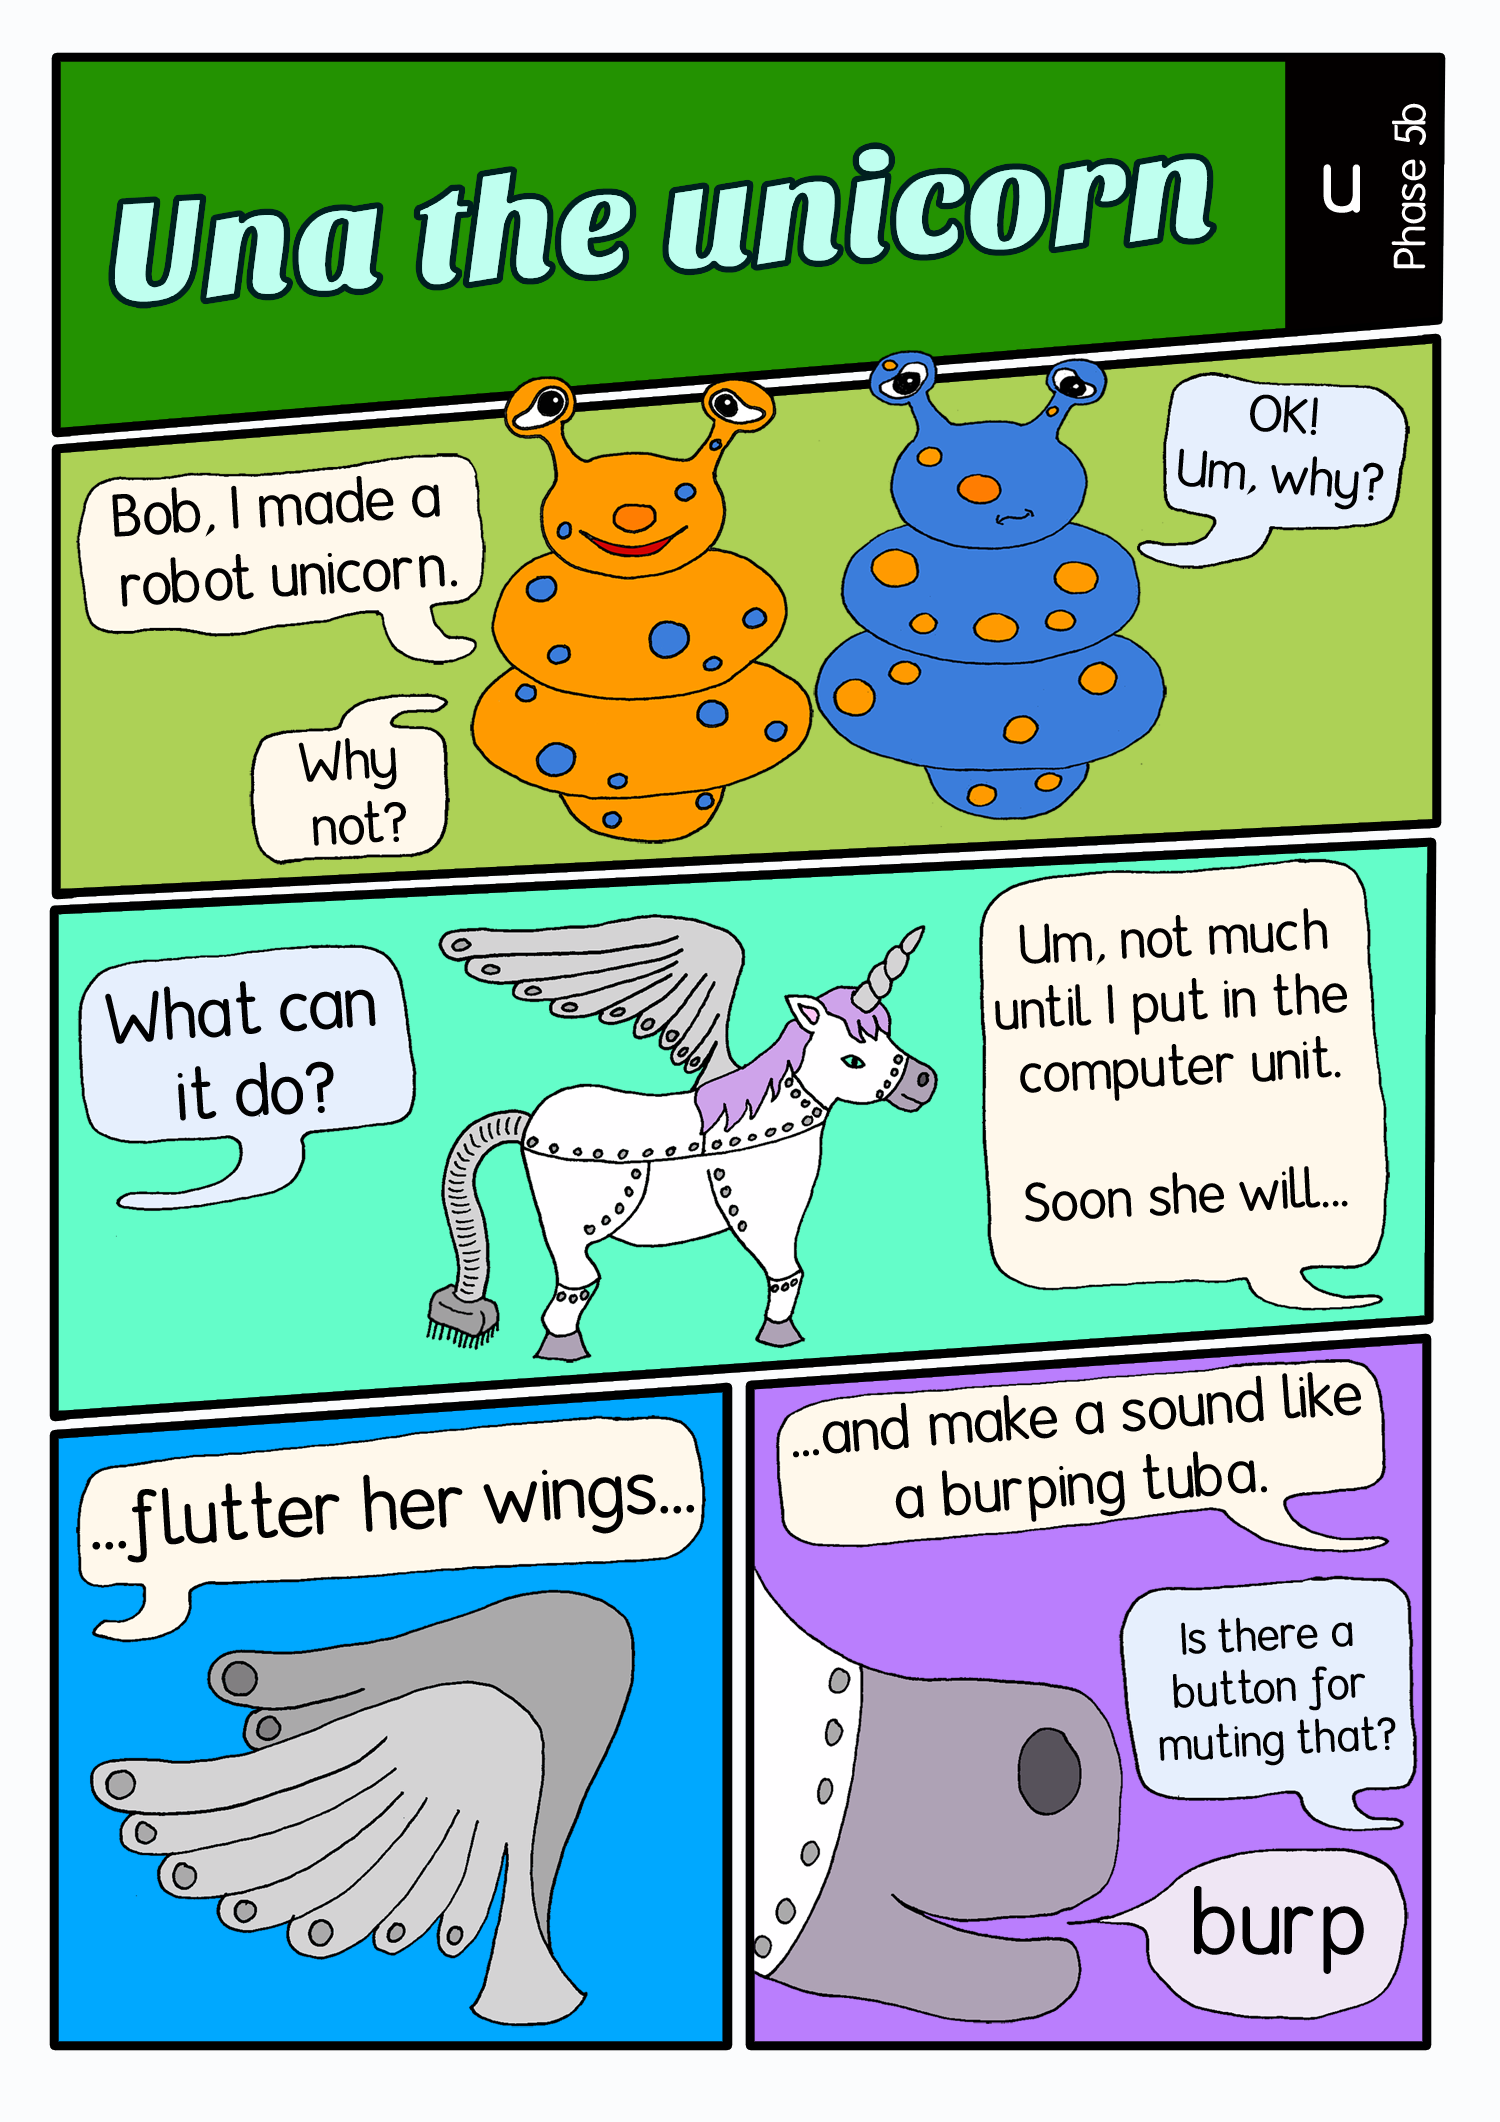 Una the unicorn comic panel1